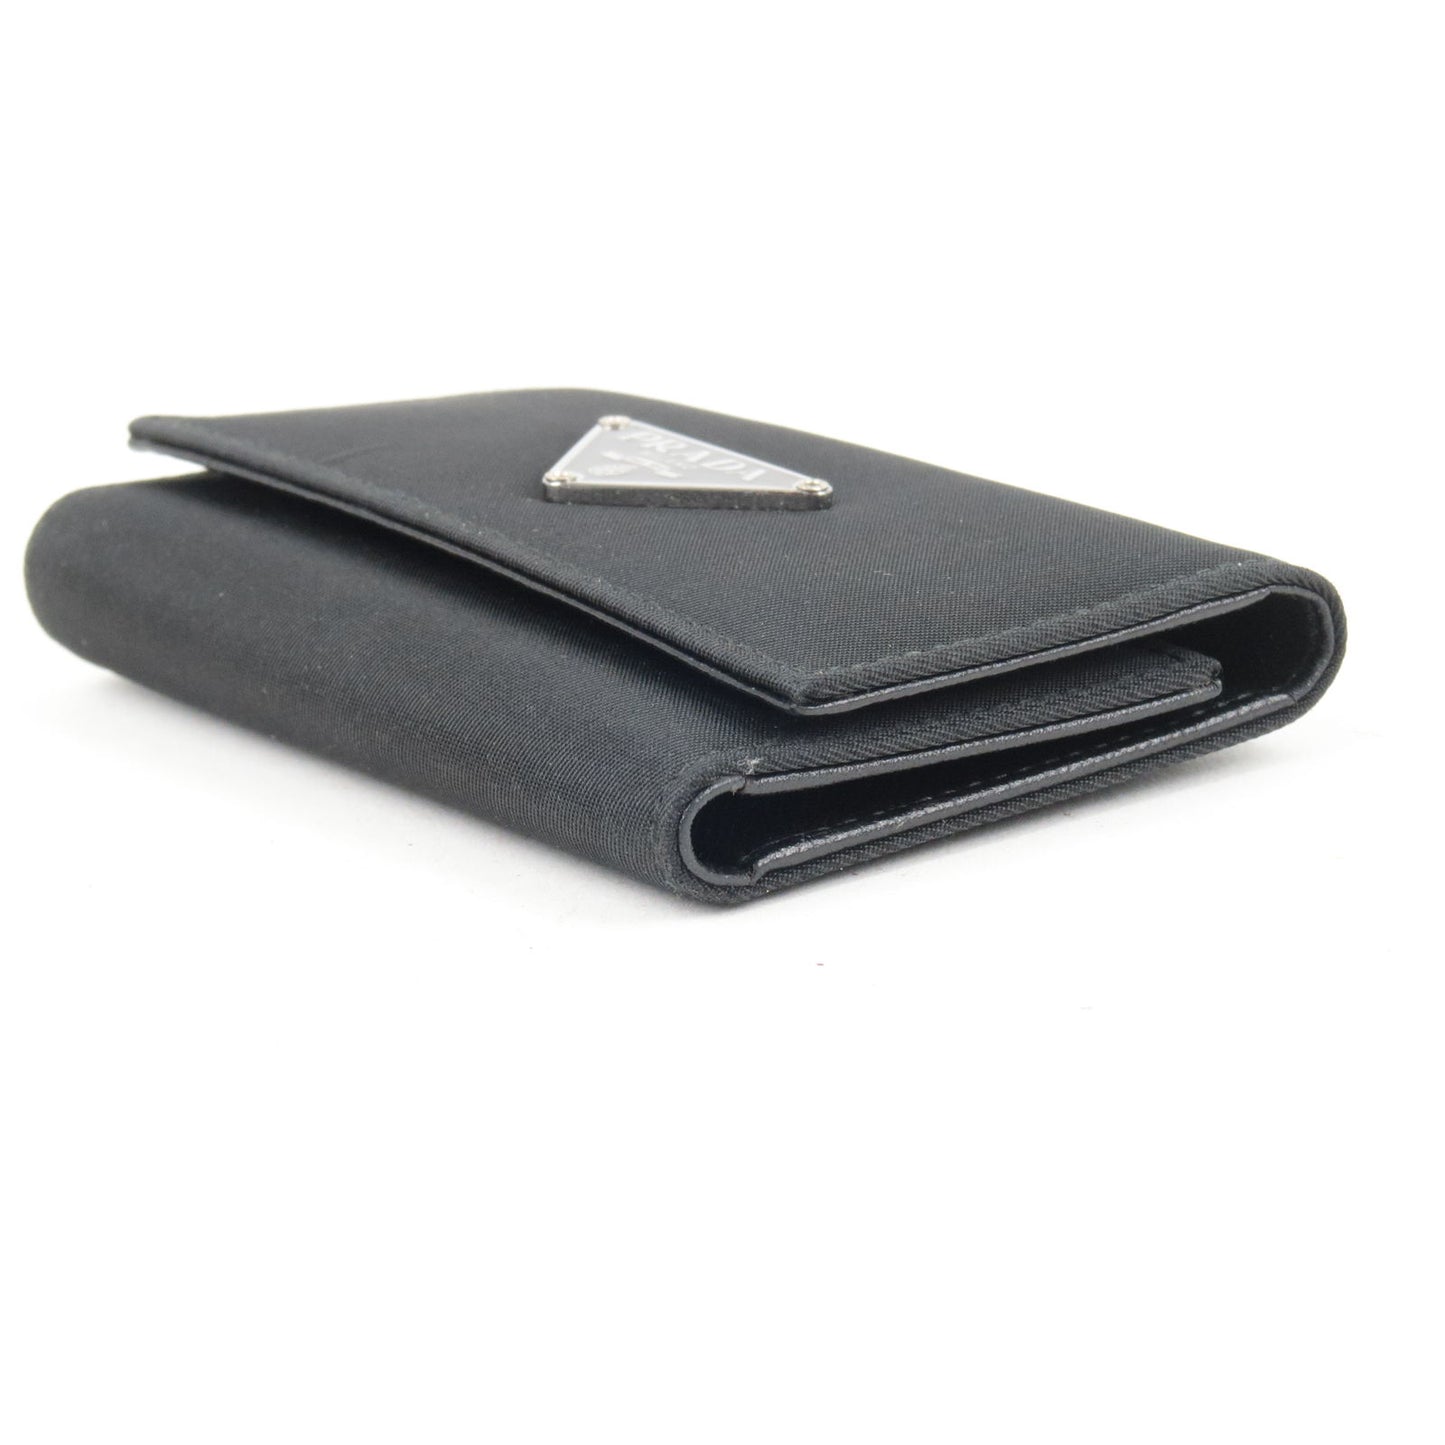 PRADA Logo Leather 6 Key Case Key Holder NERO Black M222